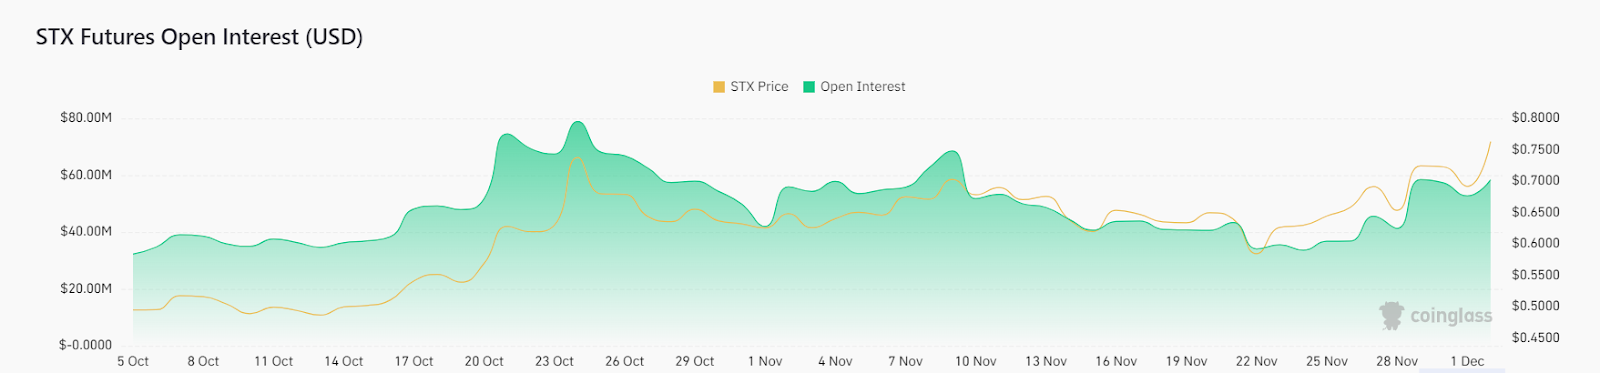 Стеки: сможет ли цена STX Crypto преодолеть верхние препятствия и достичь 1 доллара?